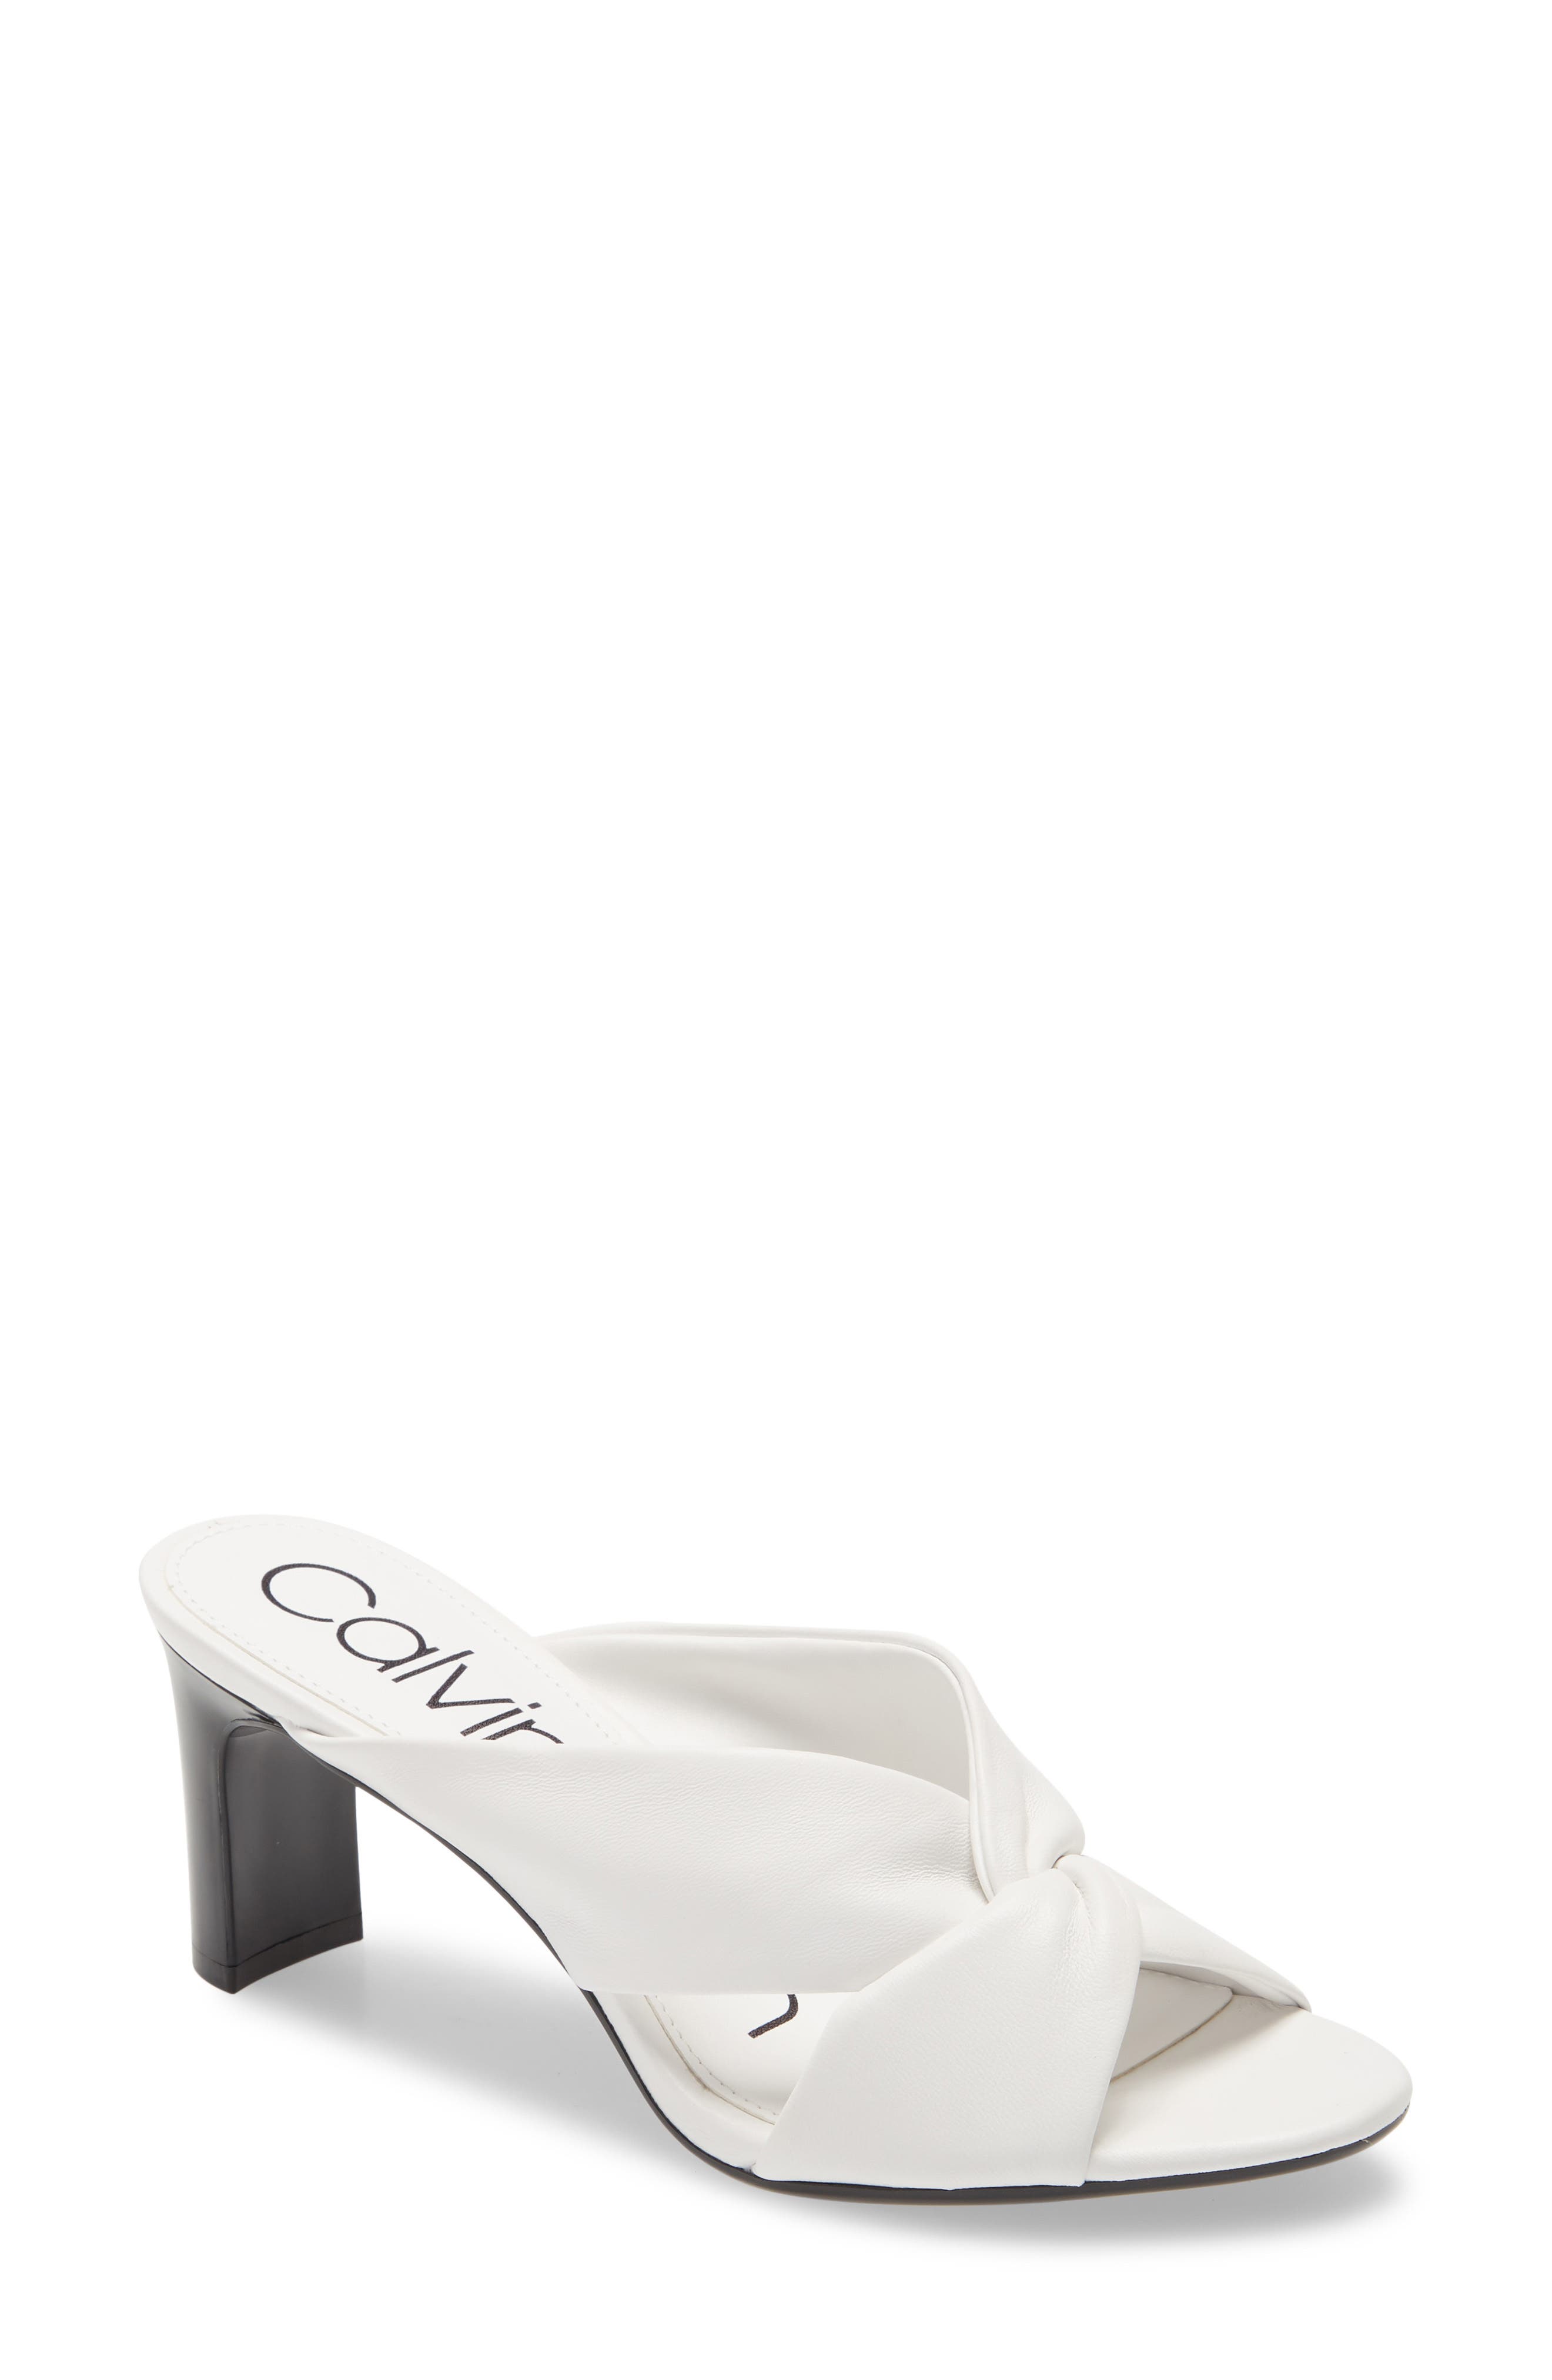 UPC 194060411224 product image for Women's Calvin Klein Omarion Sandal, Size 5 M - White | upcitemdb.com